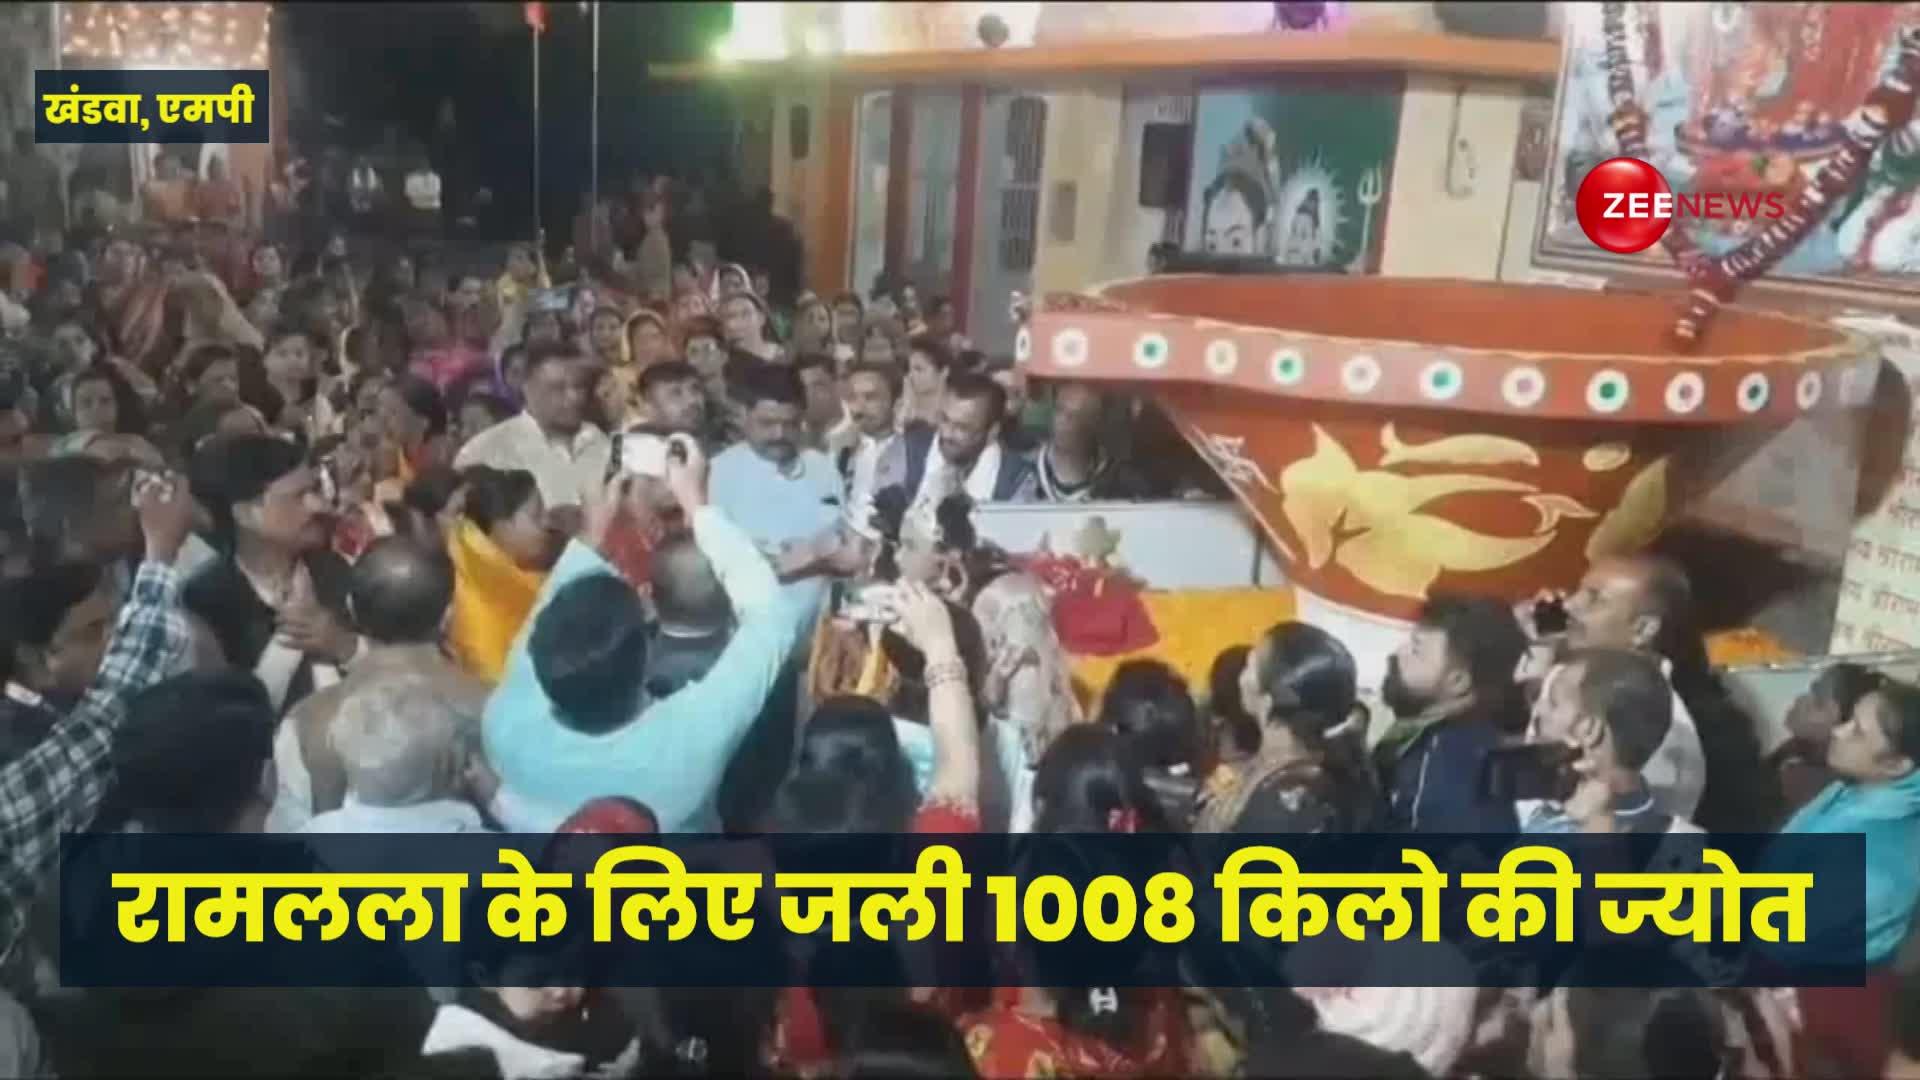 Ram Mandir Video: रामलला के लिए जलाई गई 1008 किलो की ज्योत, 108 घंटों के लिए रहेगी प्रज्वलित